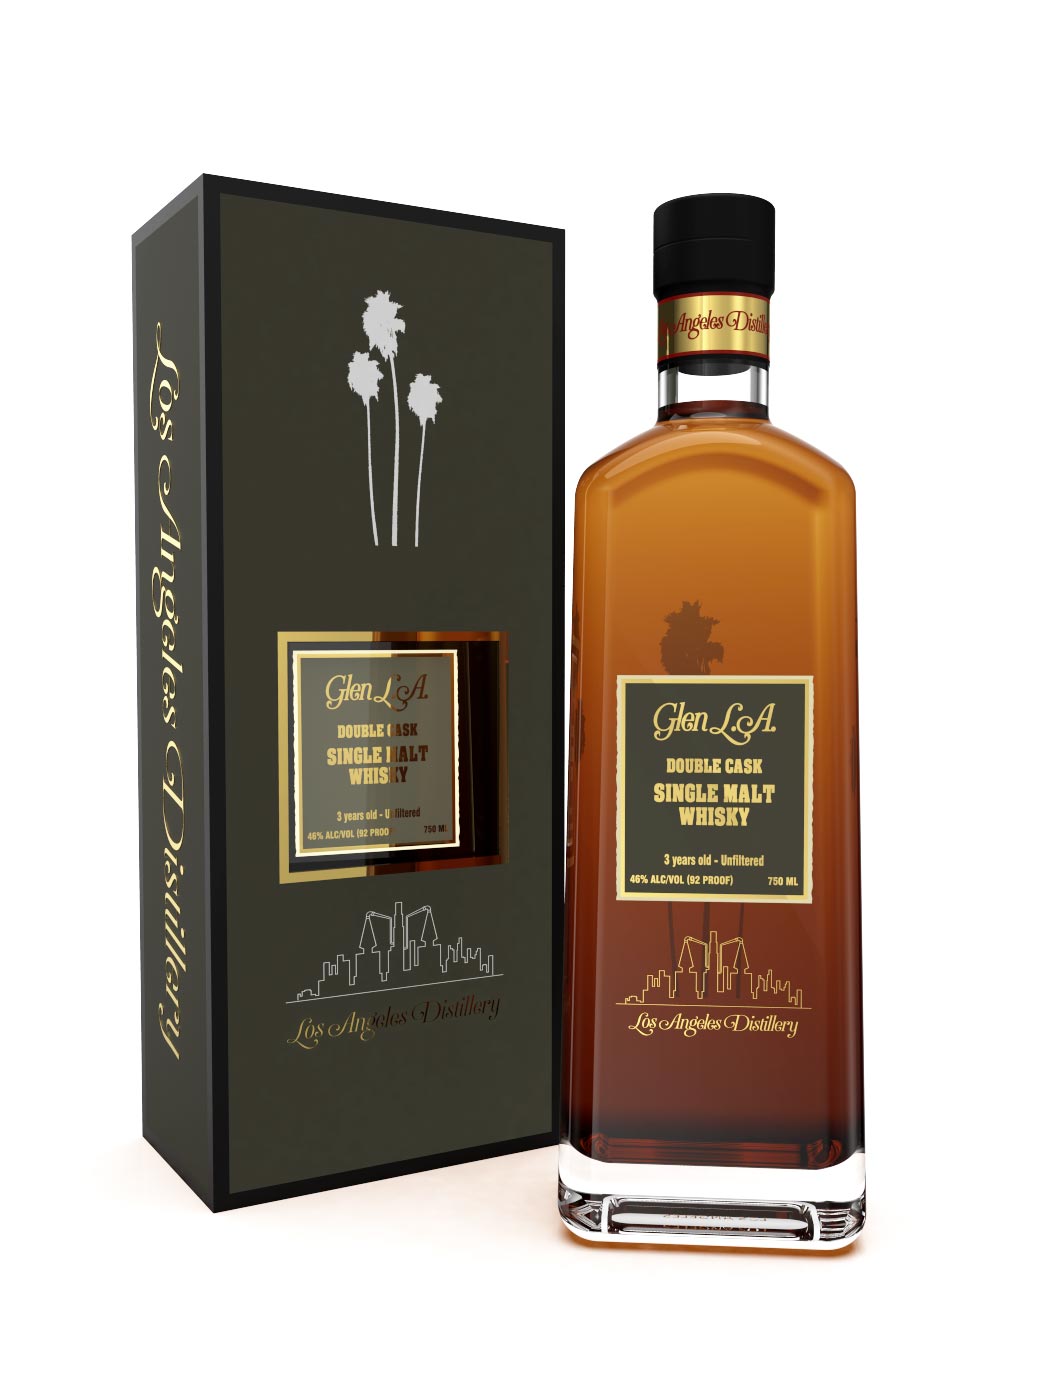 Glen LA Tokaji Cask 3 Year 92 Proof Single Malt Whisky in a Gift Box